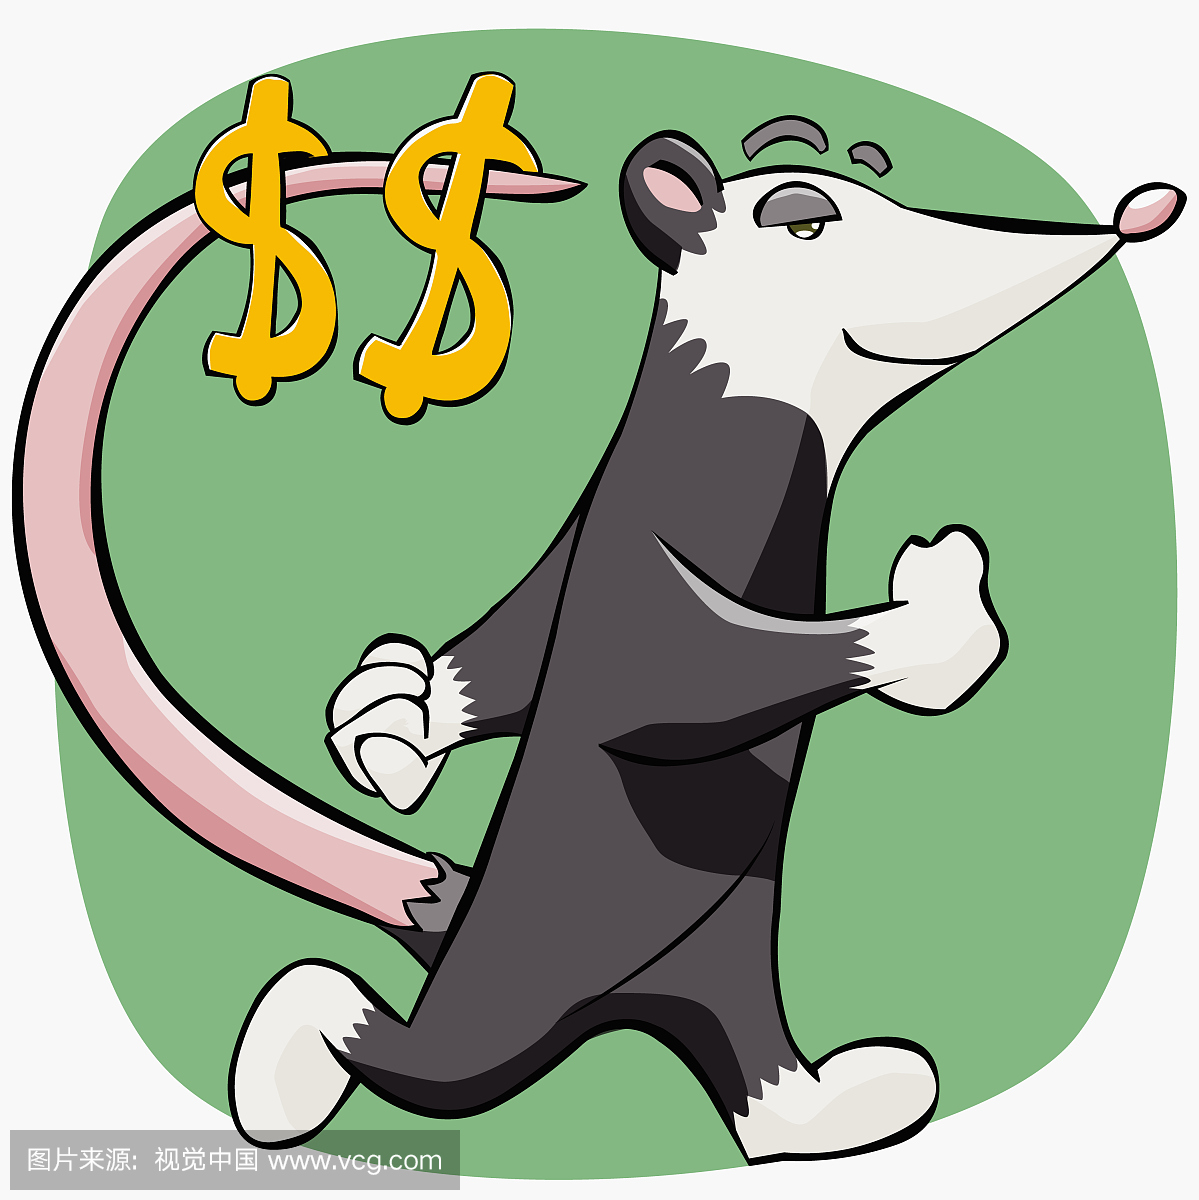 侧面轮廓的一只老鼠走路与美元符号挂在它的尾